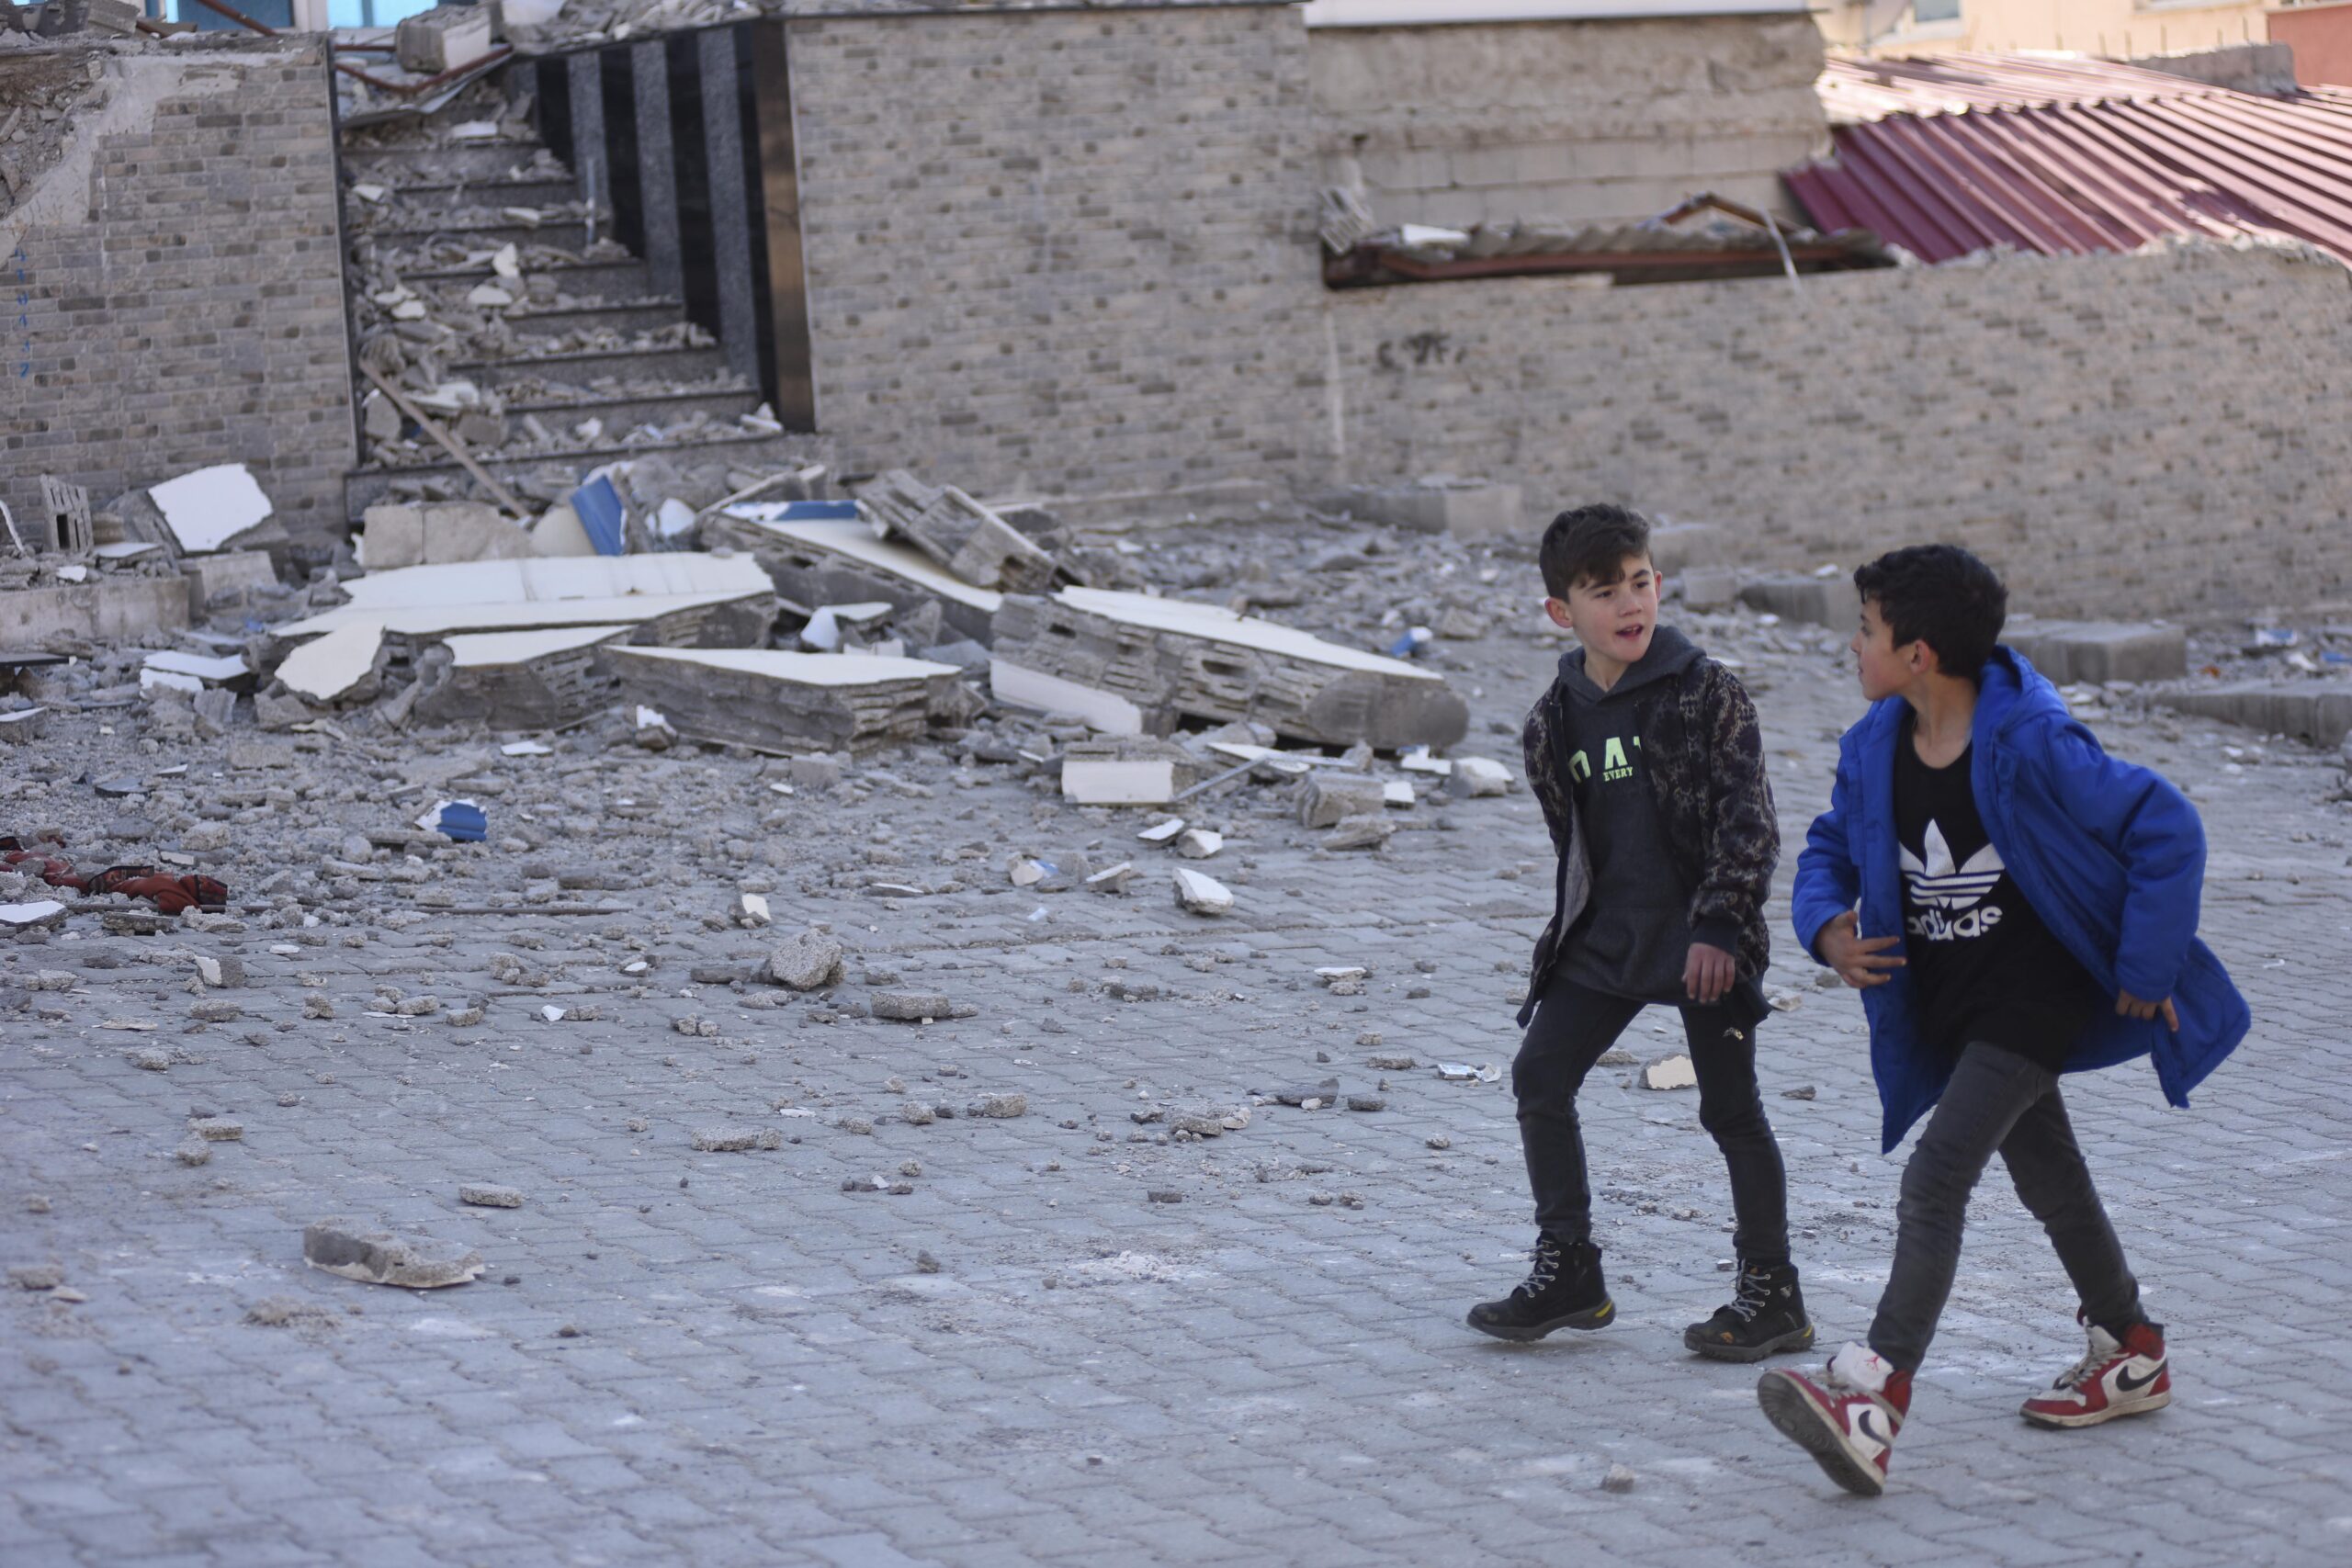 Quelle aide apporte-t-on aux enfants après les tremblements de terre en Syrie et en Turquie le 6 février 2023?